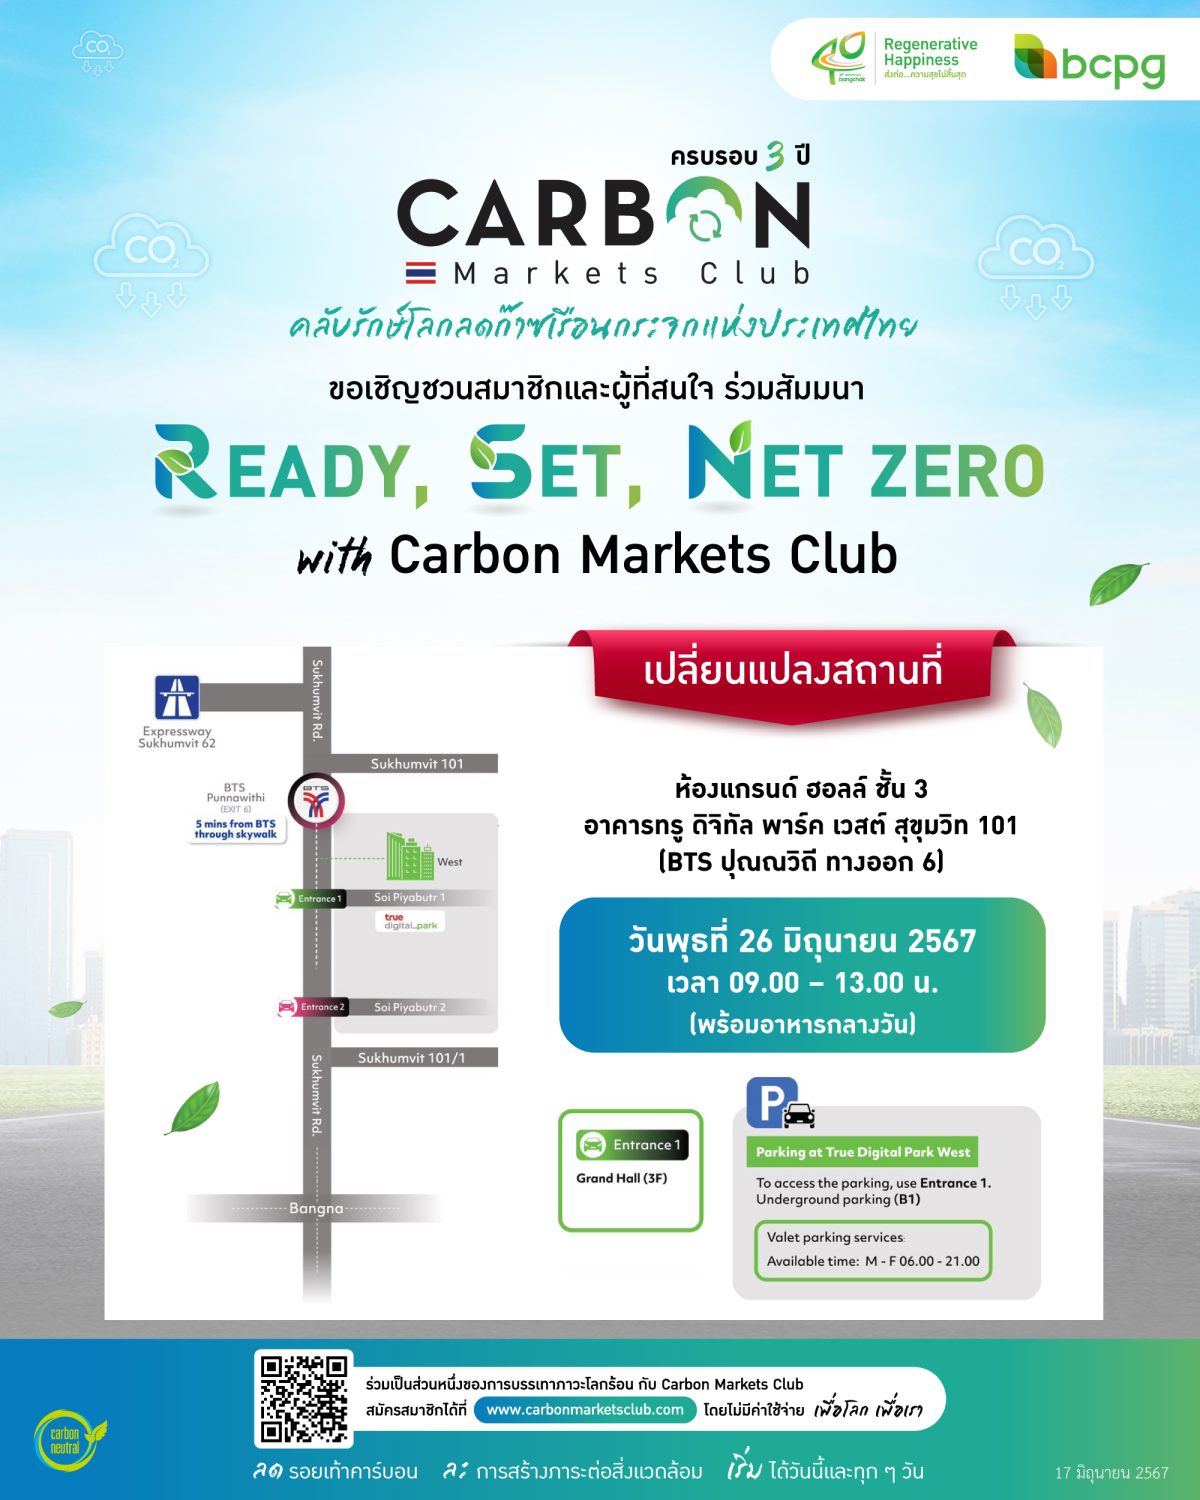 บางจากฯ แจ้งเปลี่ยนสถานที่จัดงาน READY, SET, NET ZERO ครบรอบ 3 ปี Carbon Markets Club ชวนรุก รับ ปรับตัว รับมือยุคโลกเดือด เป็นที่ อาคาร ทรู ดิจิทัล พาร์ค เวสต์ สุขุมวิท